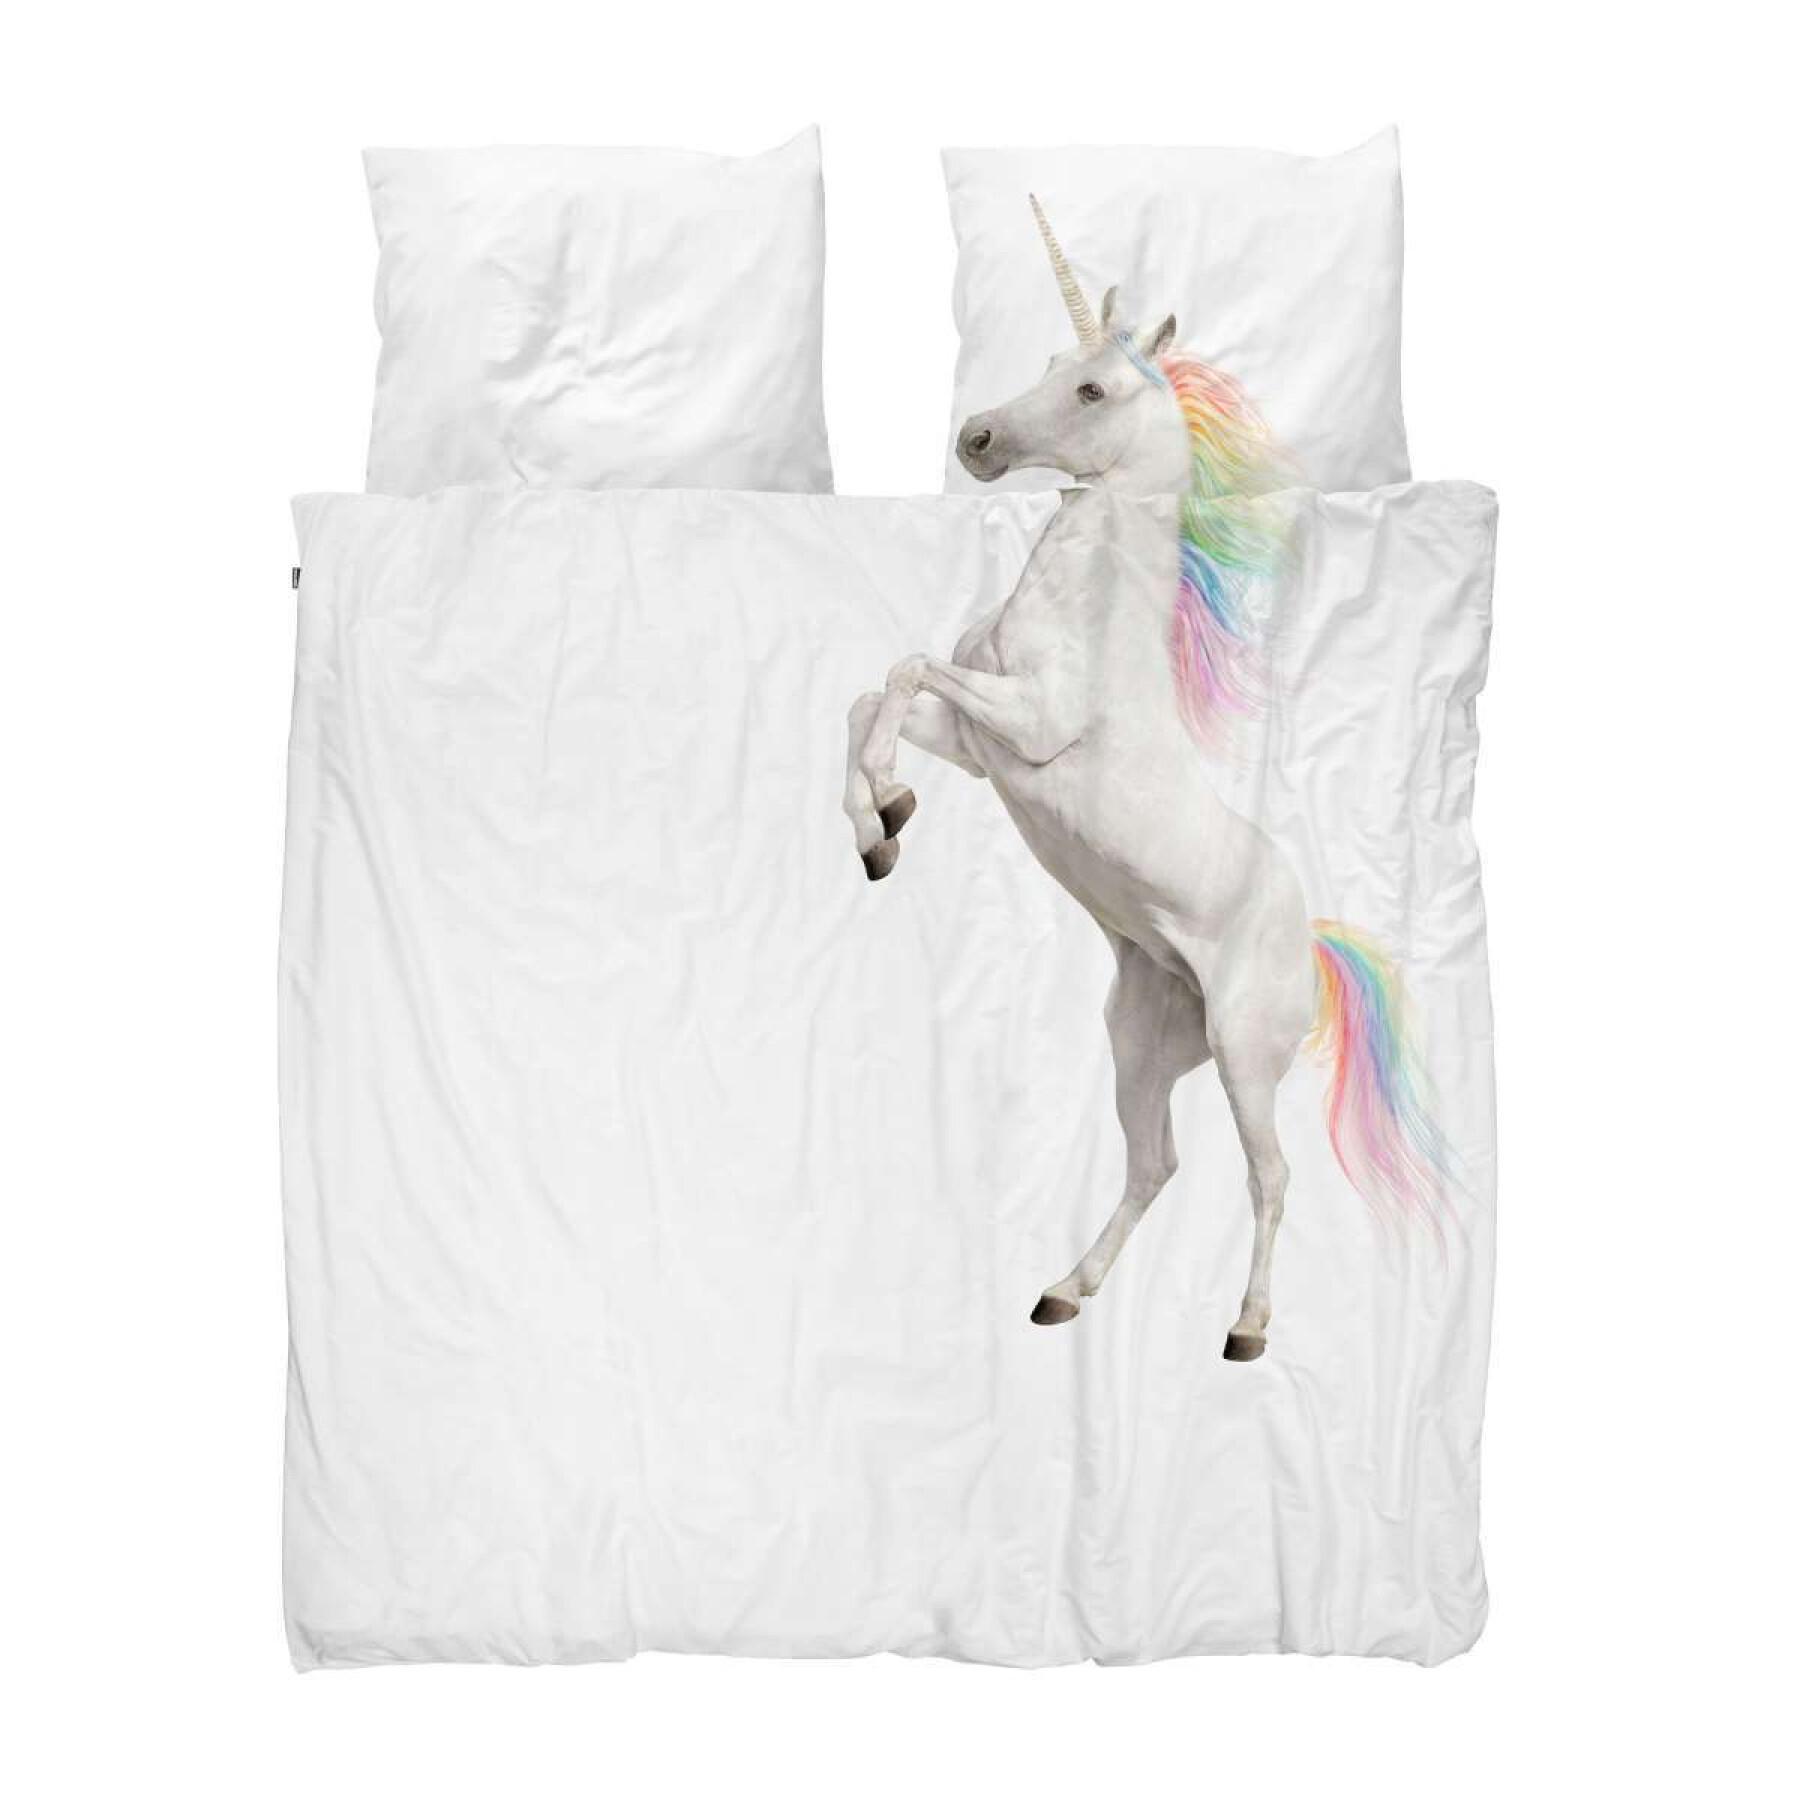 Poszewka na kołdrę i poduszkę dla dzieci Snurk Unicorn